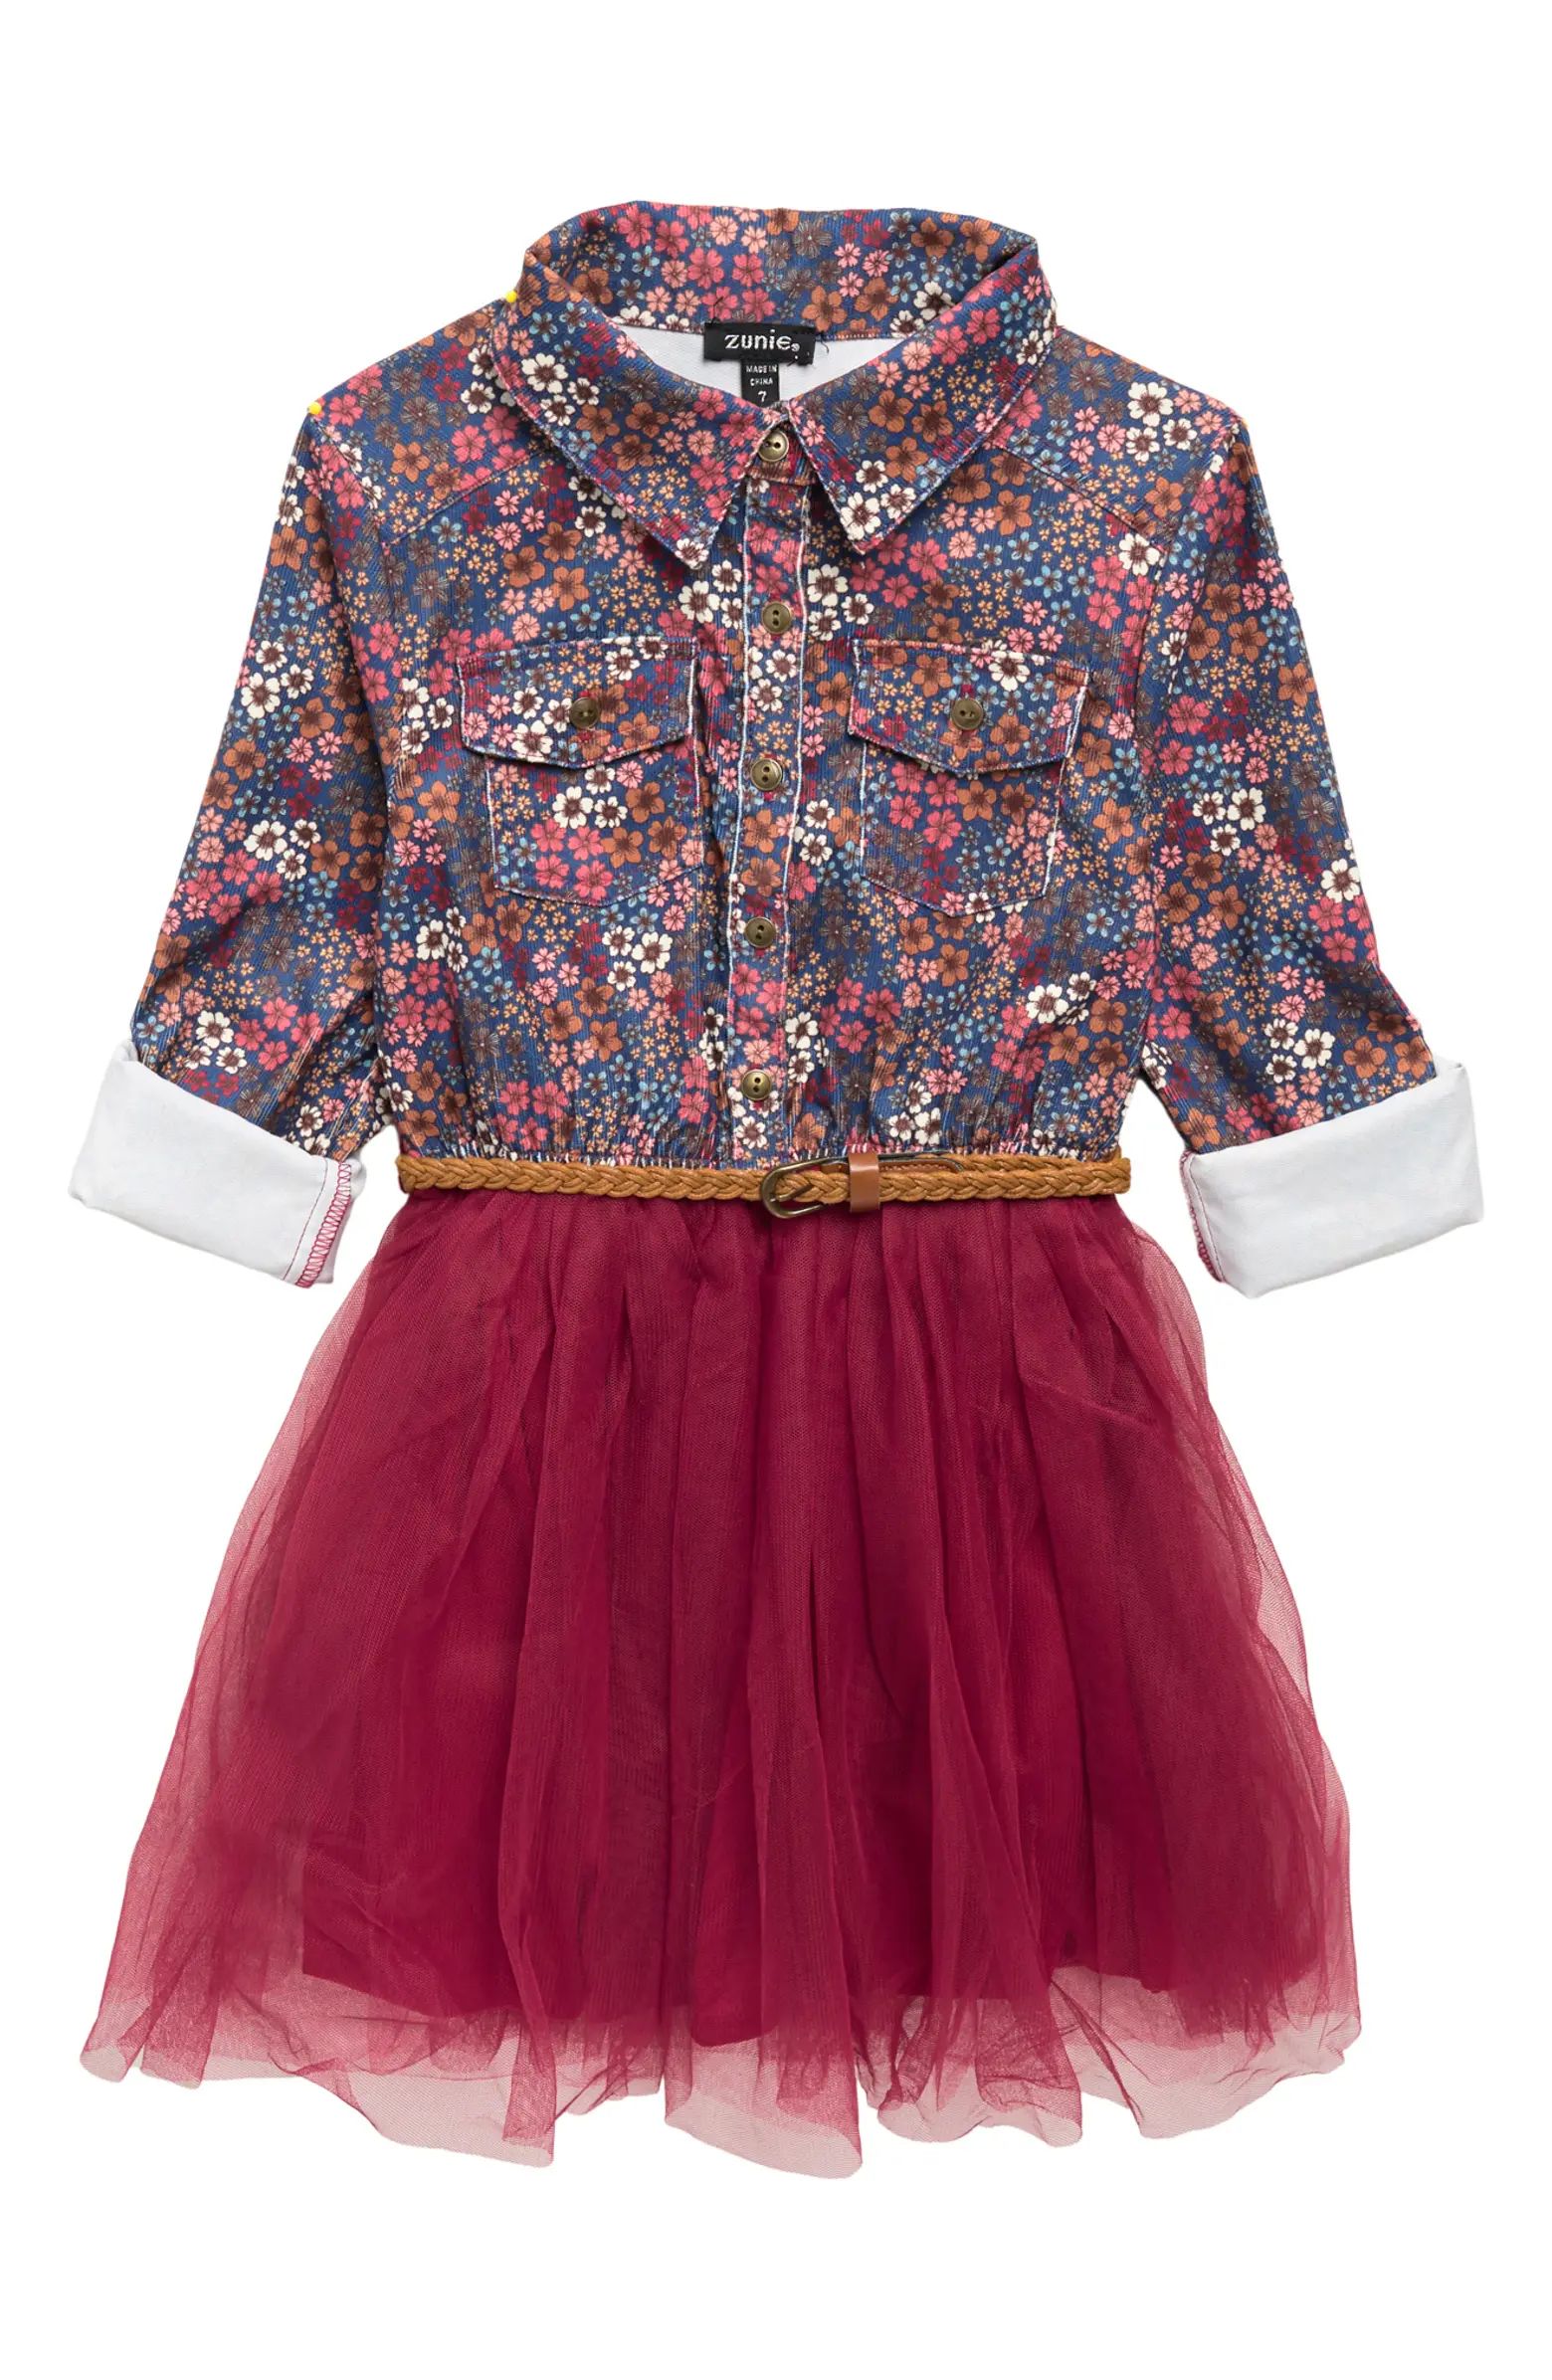 Zunie Kids' Corduroy Tulle Skirt Dress | Nordstromrack | Nordstrom Rack